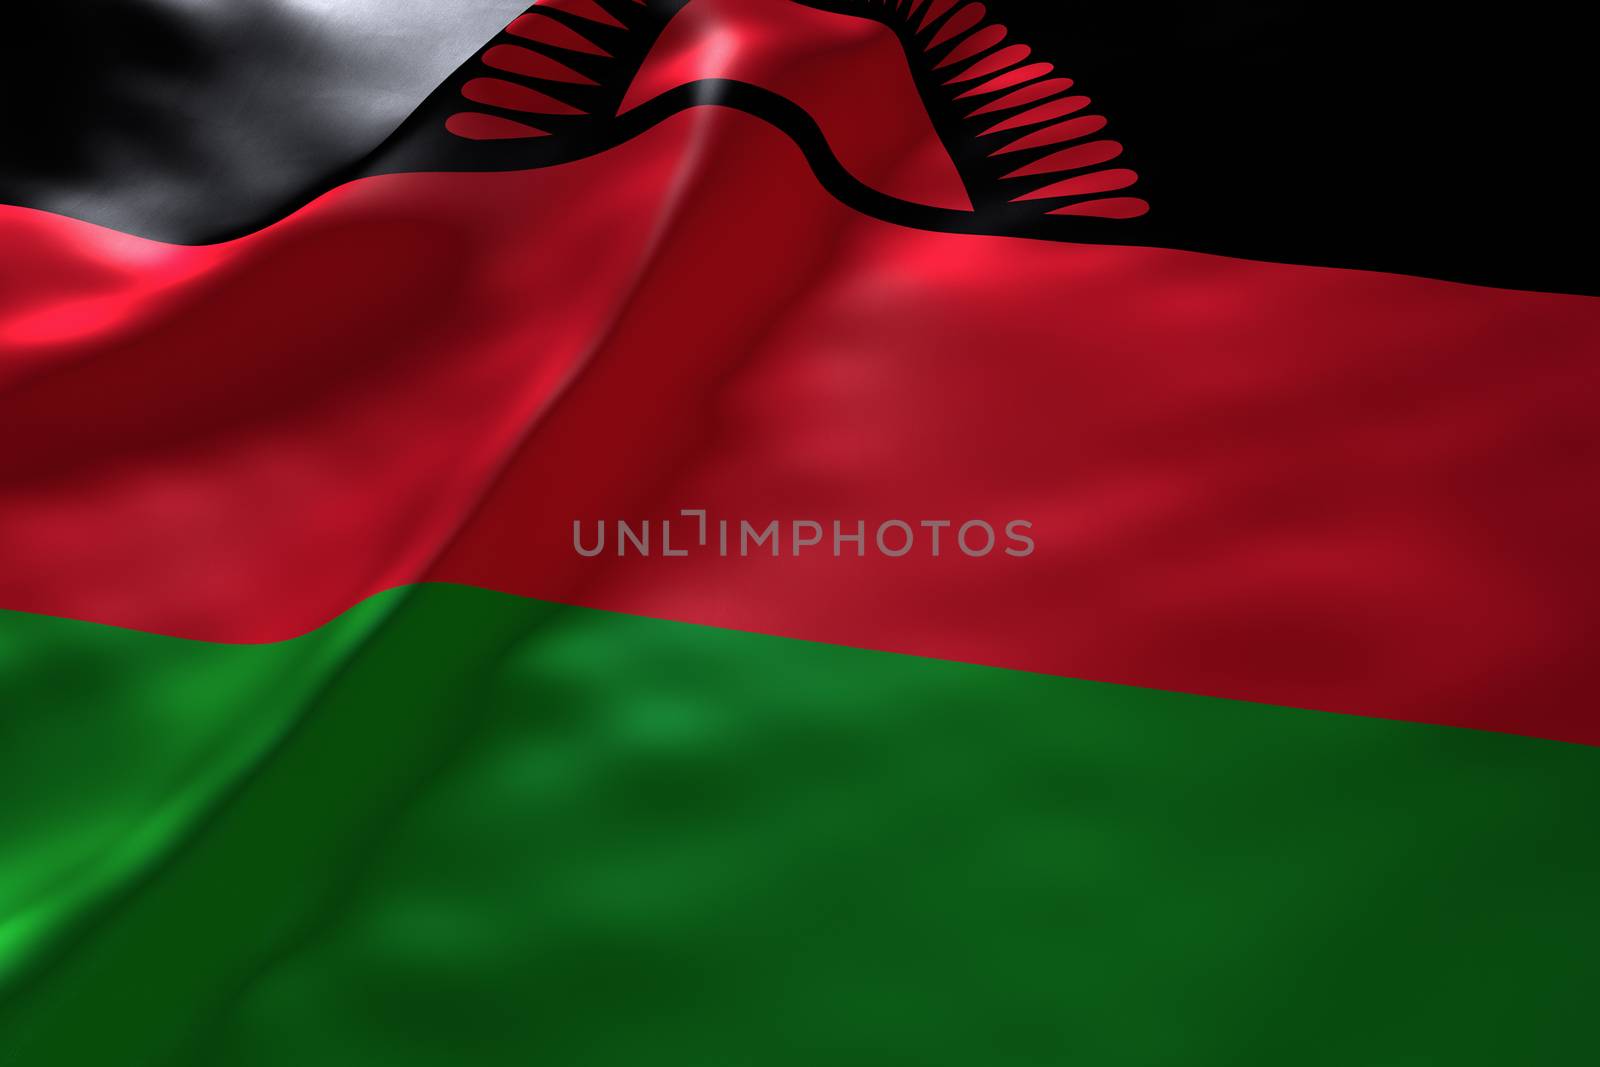 Malawi flag background